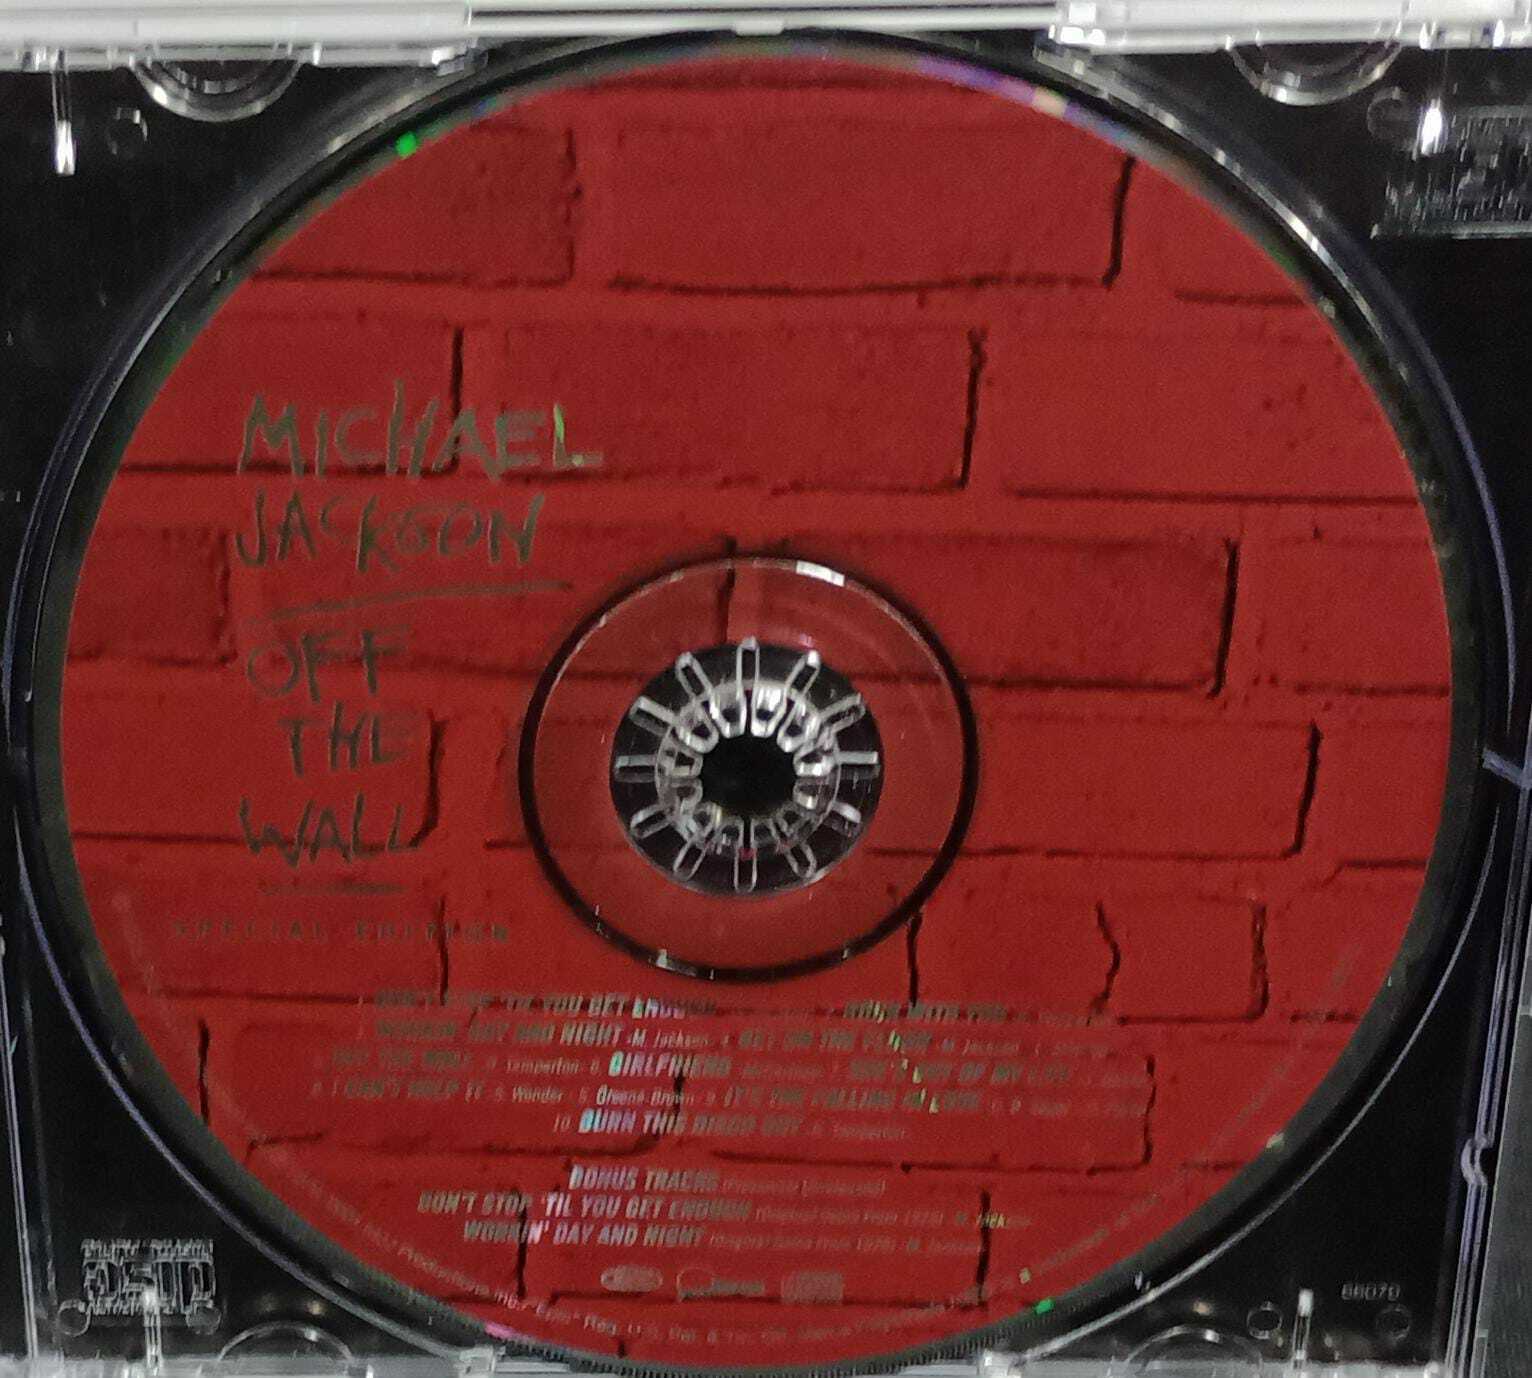 CD - Michael Jackson - Off The Wall (USA)